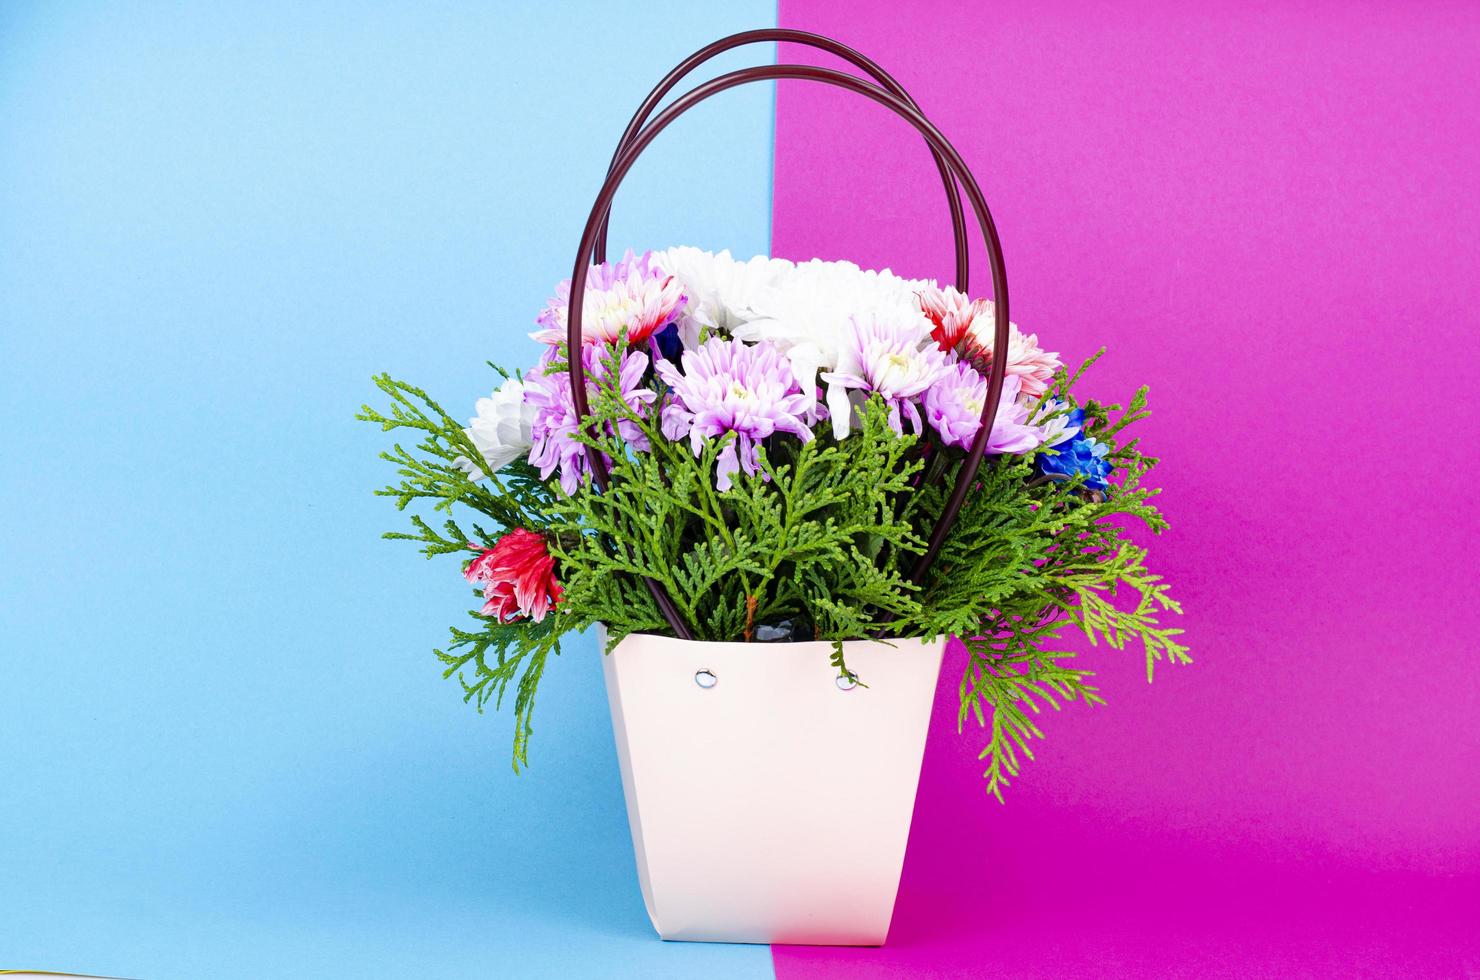 flores decorativas de crisântemo na cesta em fundo colorido. foto de estúdio.